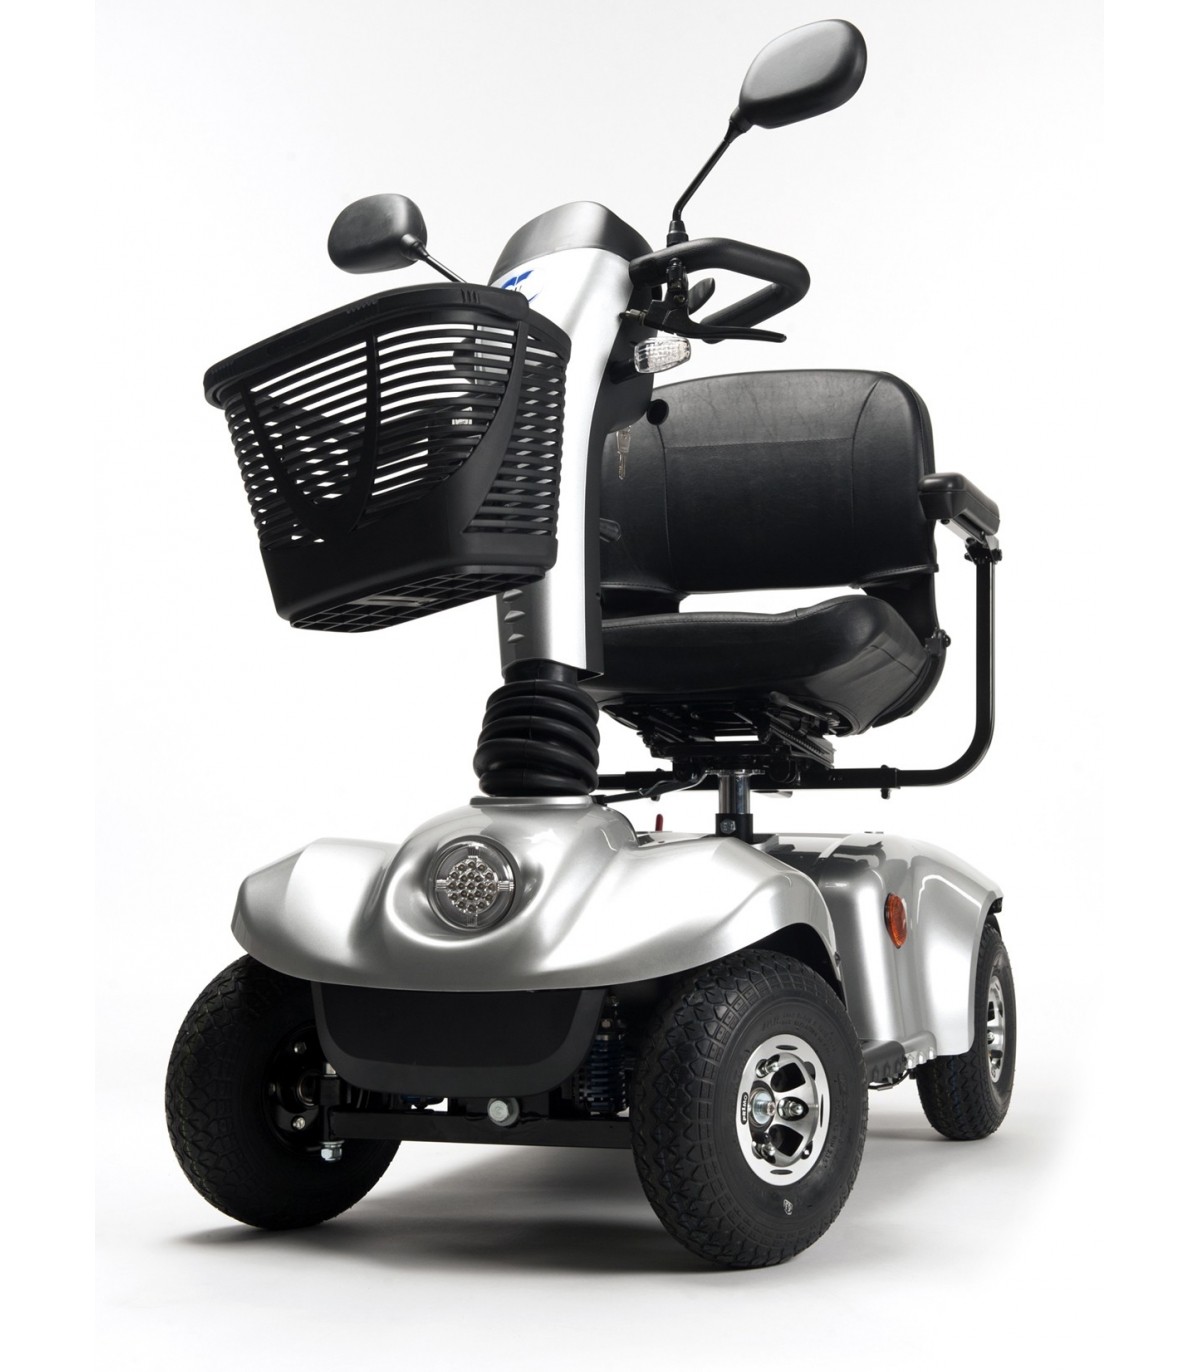 Scooter handicapé 4 roues Carpo 2 SE 10 km/h - Medical Domicile